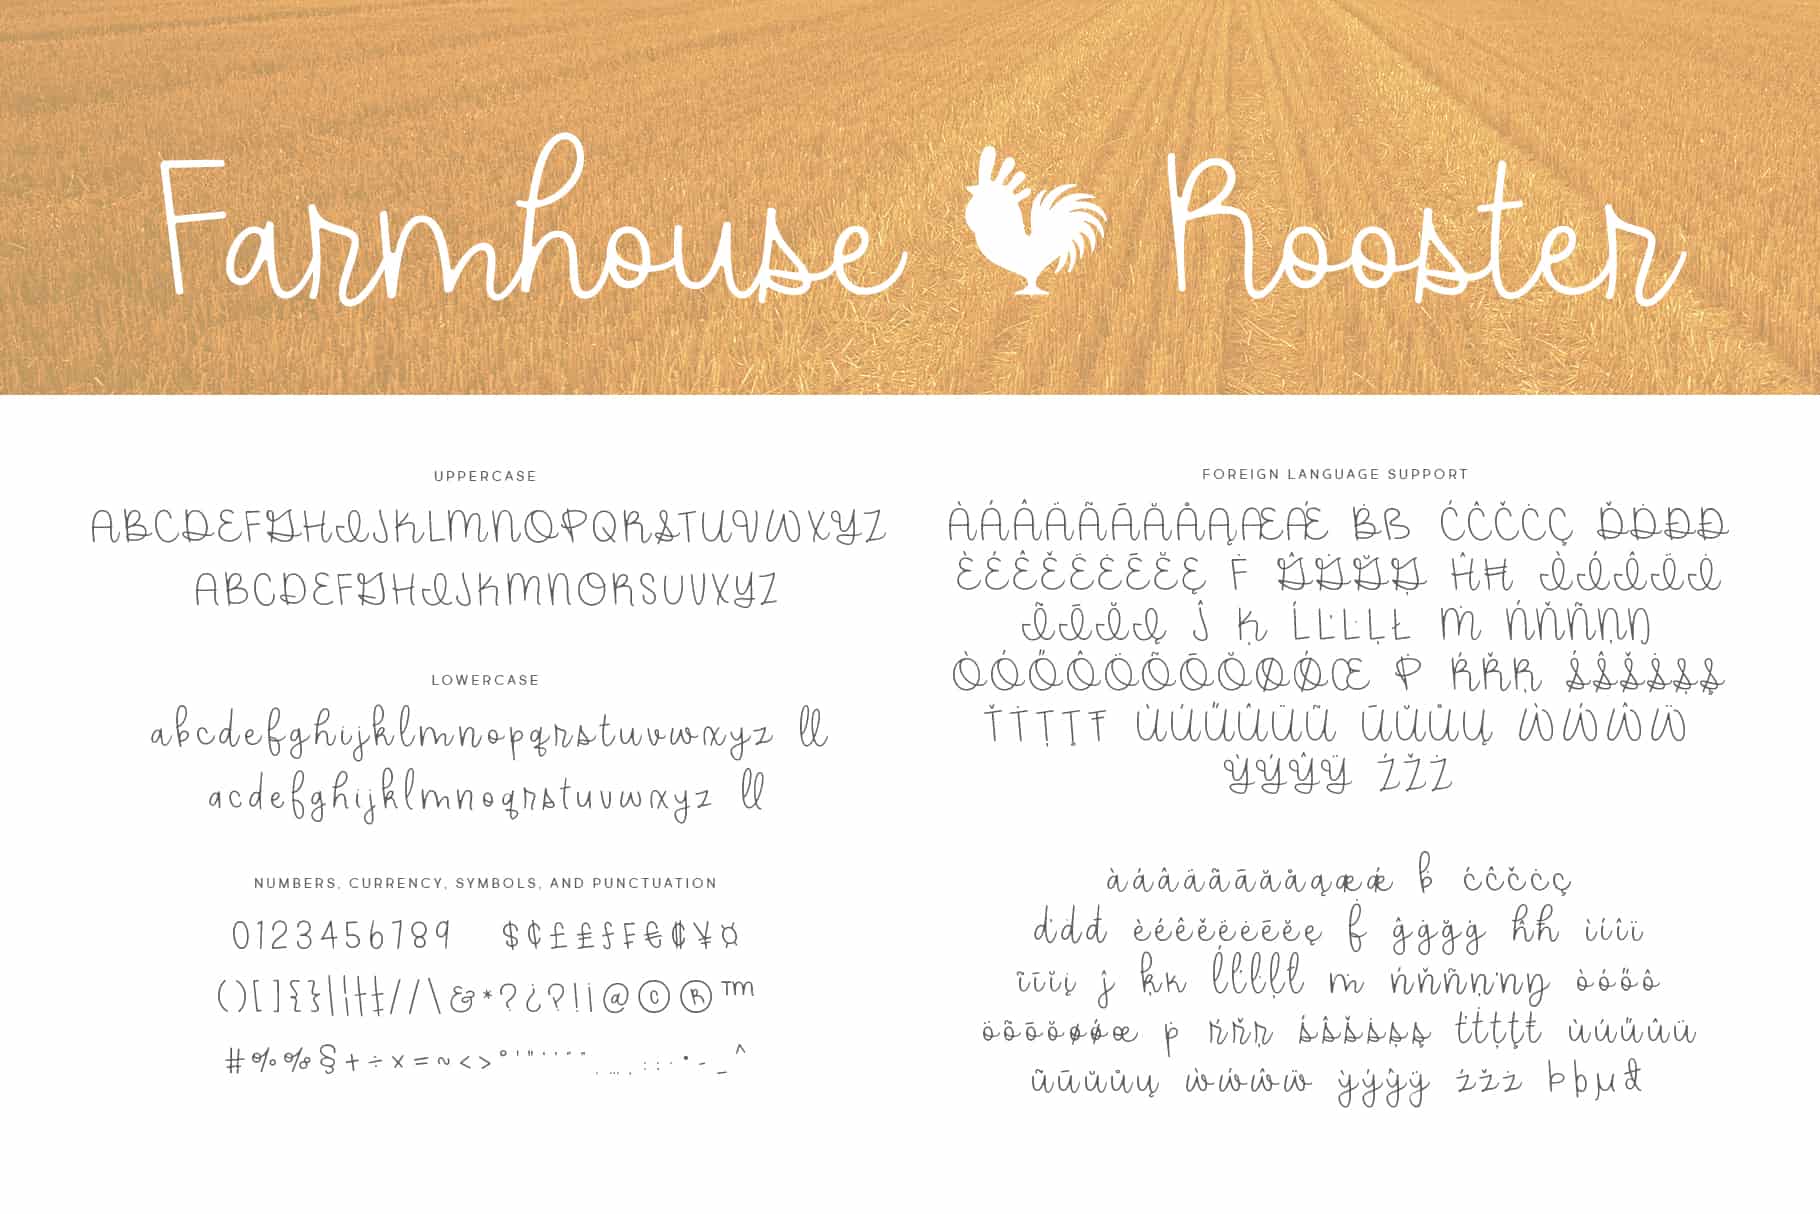 Farmhouse Rooster Font Handwritten Brittney Murphy Design